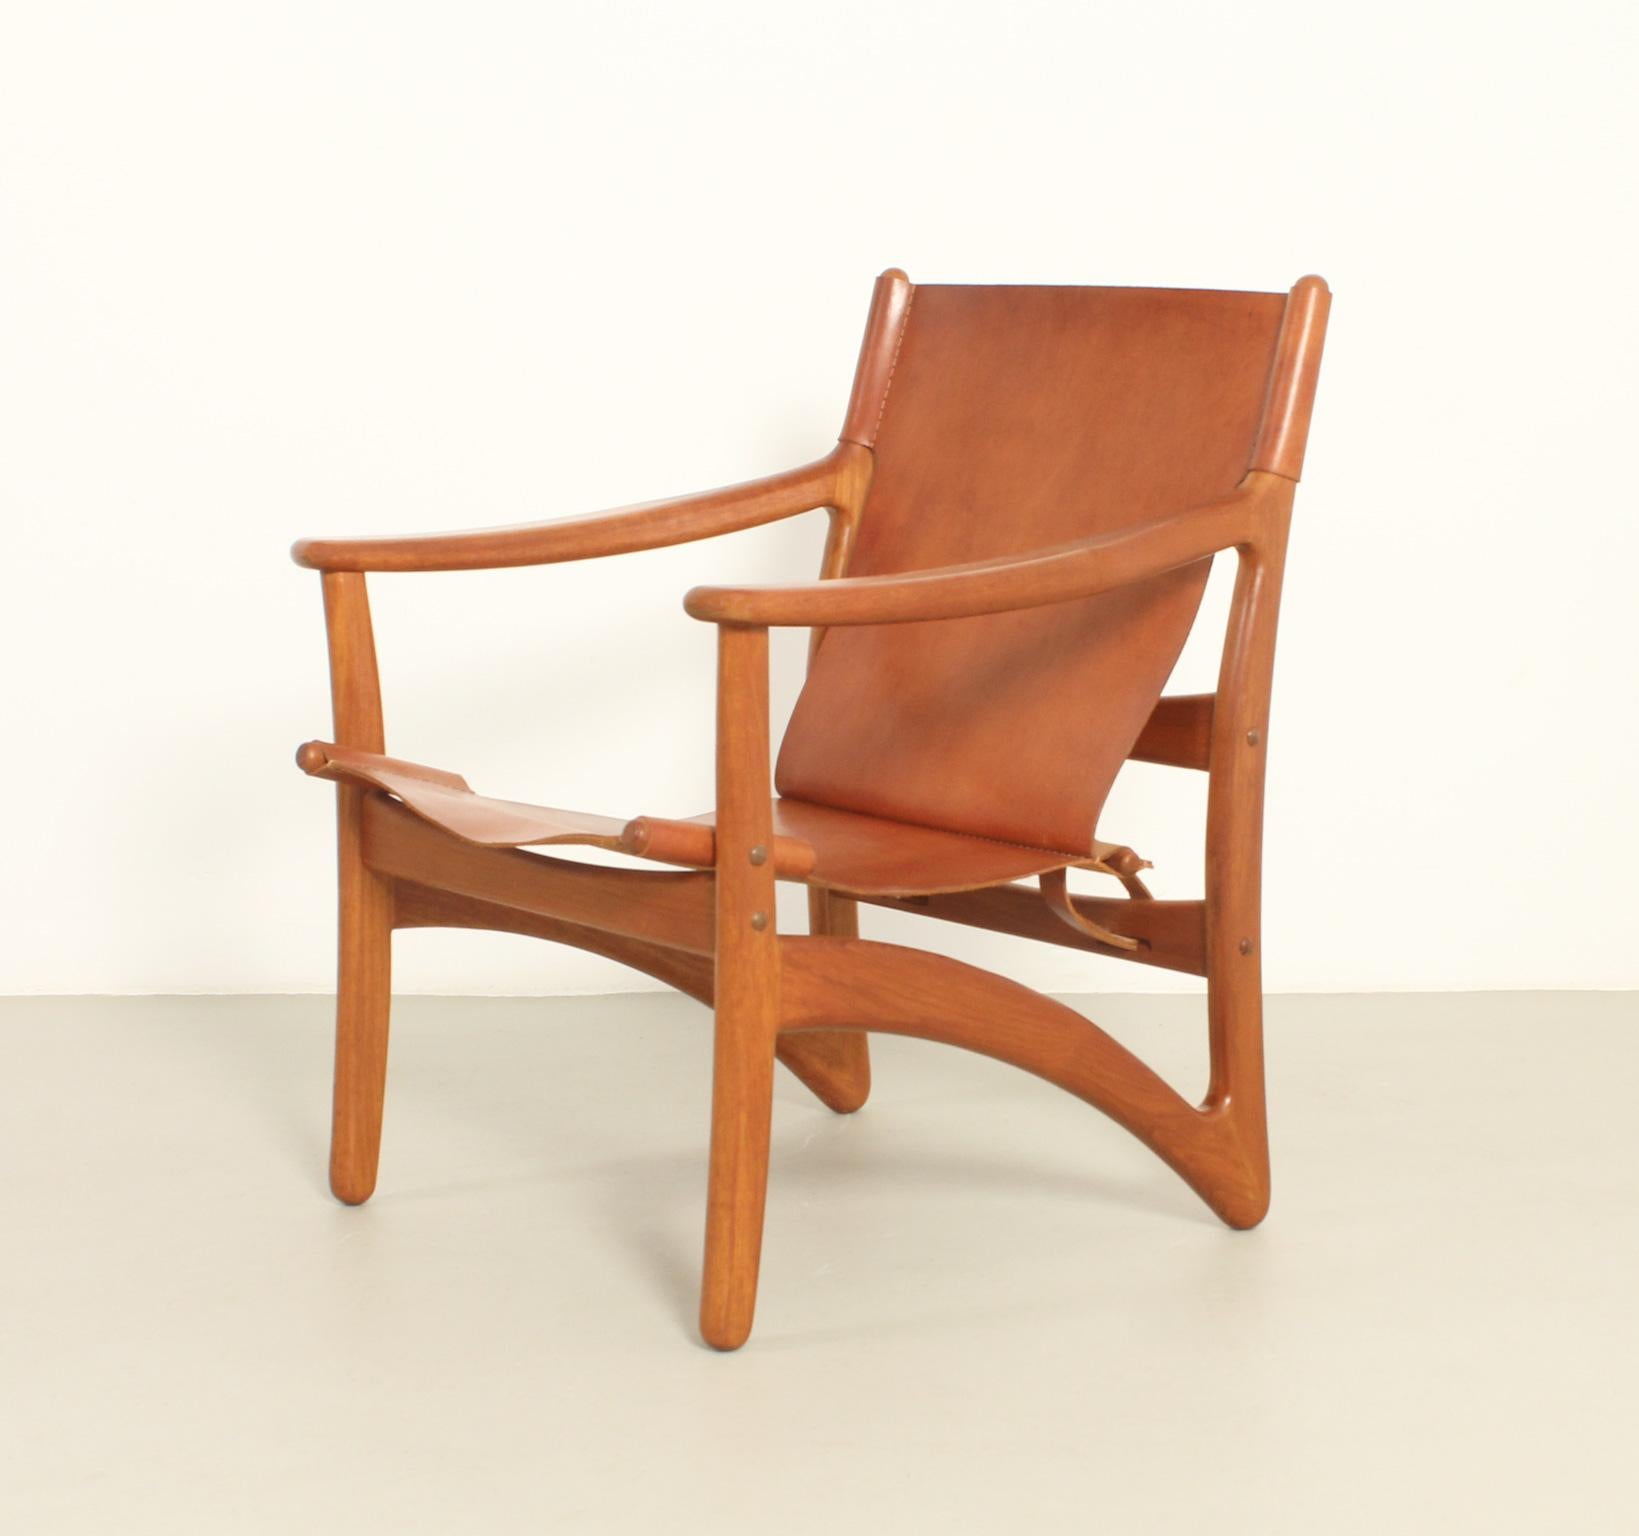 Pegasus-Sessel, entworfen von Arne Vodder für Kircodan, Dänemark, 1960er Jahre. Massives Teakholz mit Sitz und Rückenlehne aus cognacfarbenem Leder. Signiert mit Herstellerkennzeichen.